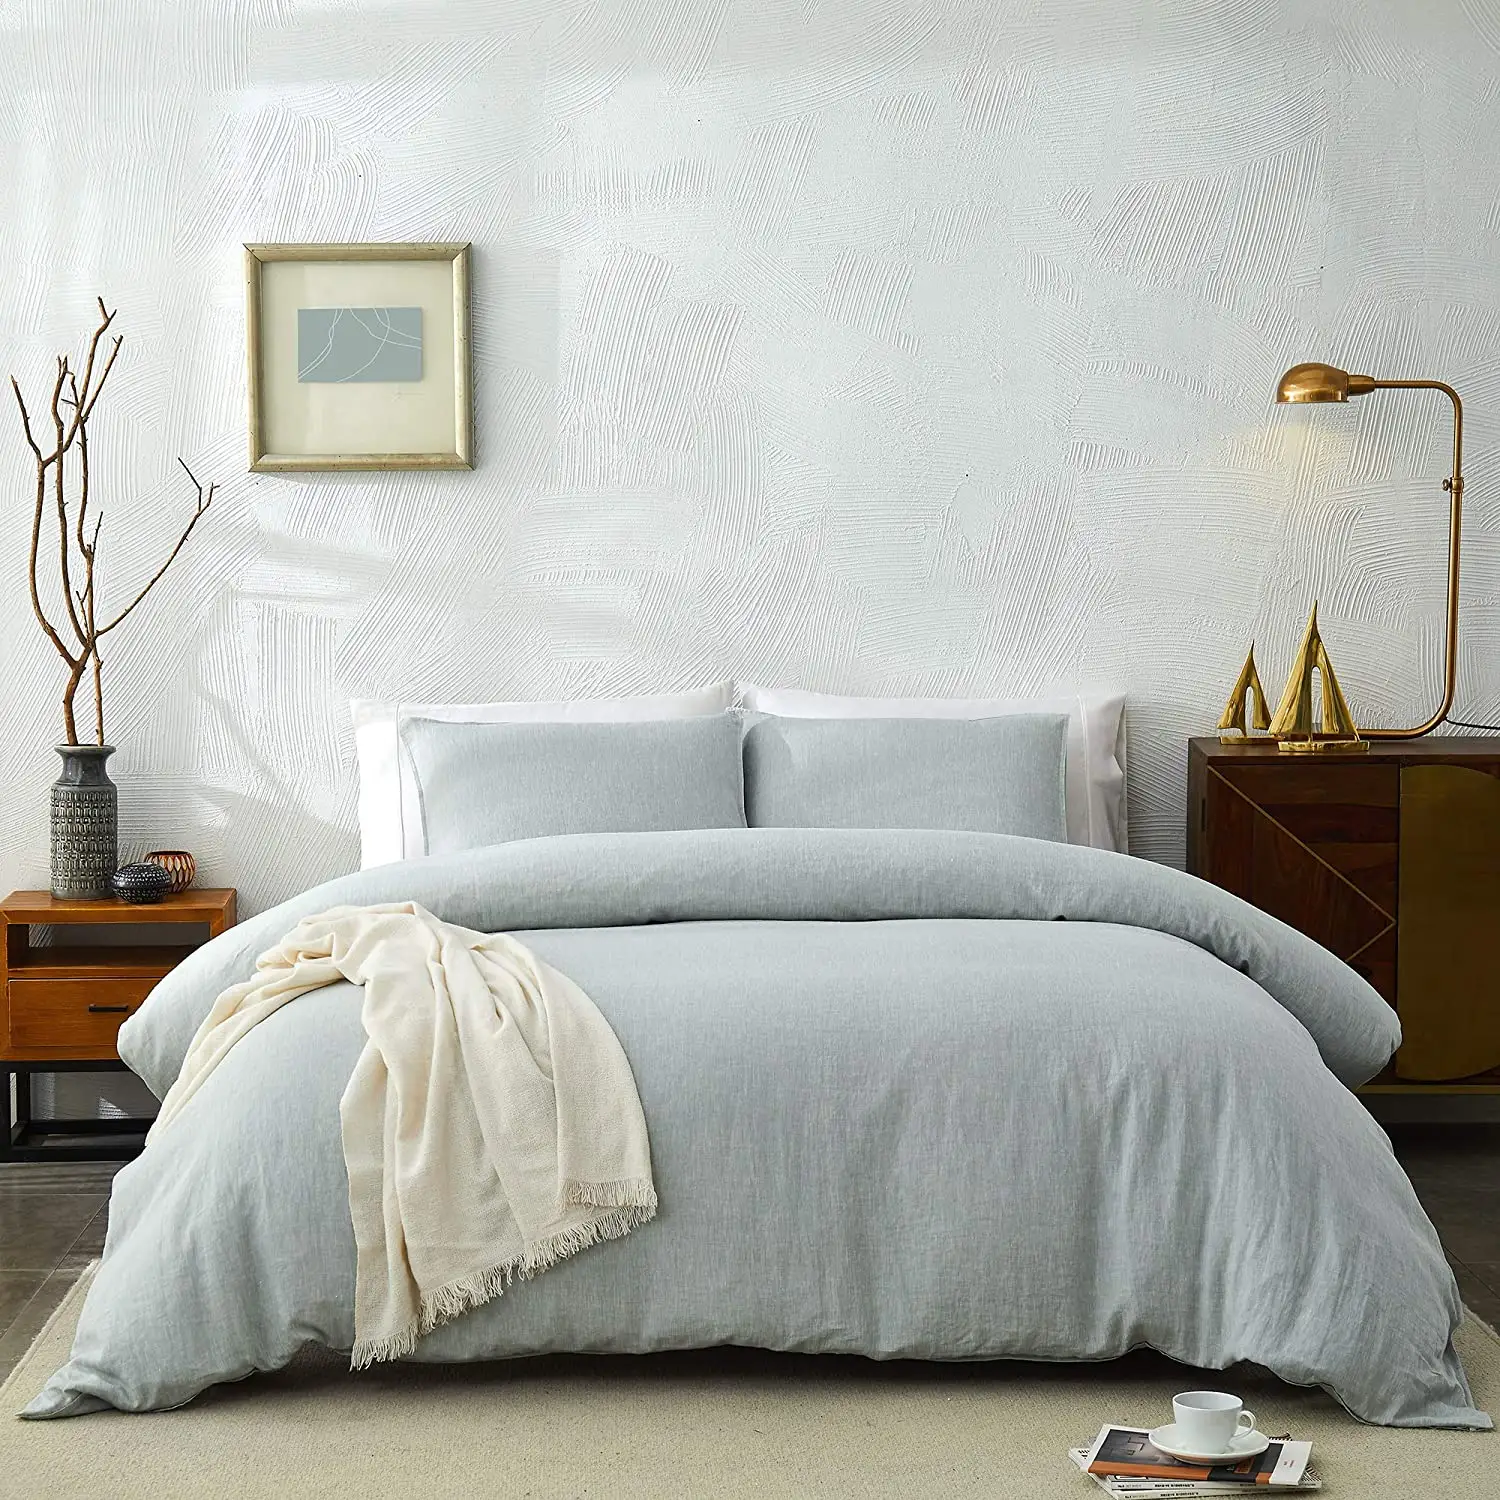 Japon tarzı nefes saf keten yorgan yatak örtüsü seti % 100% doğal fransız nevresim yatak örtüsü seti s sıcak uyuyanlar